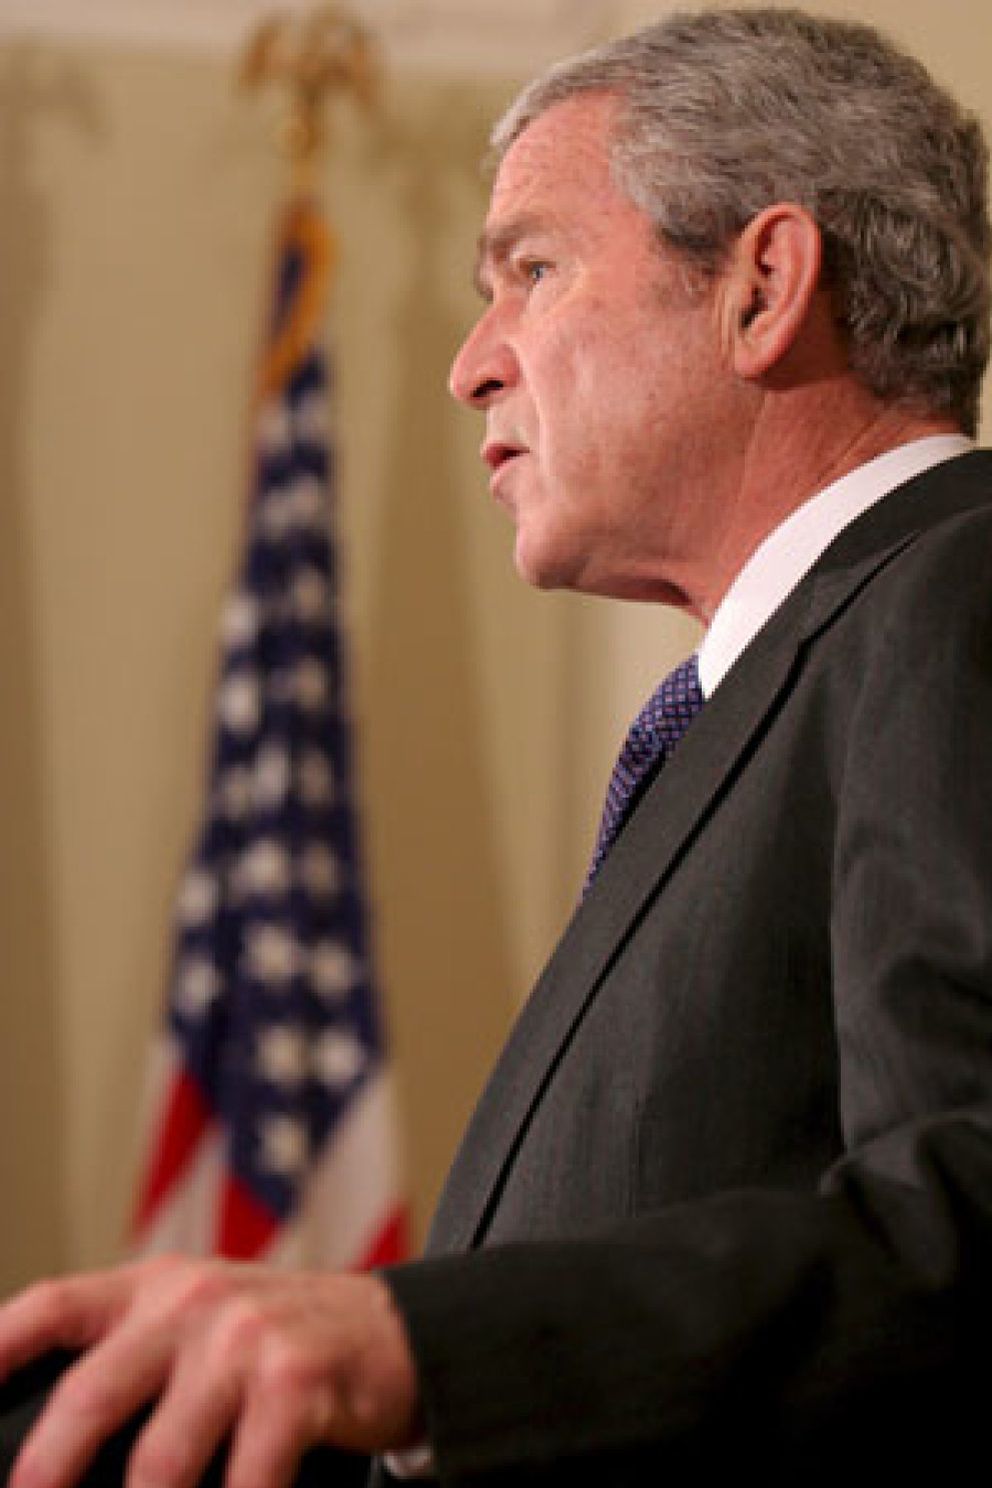 Foto: La administración Bush presionó para elevar las alertas terroristas antes de las elecciones de 2004